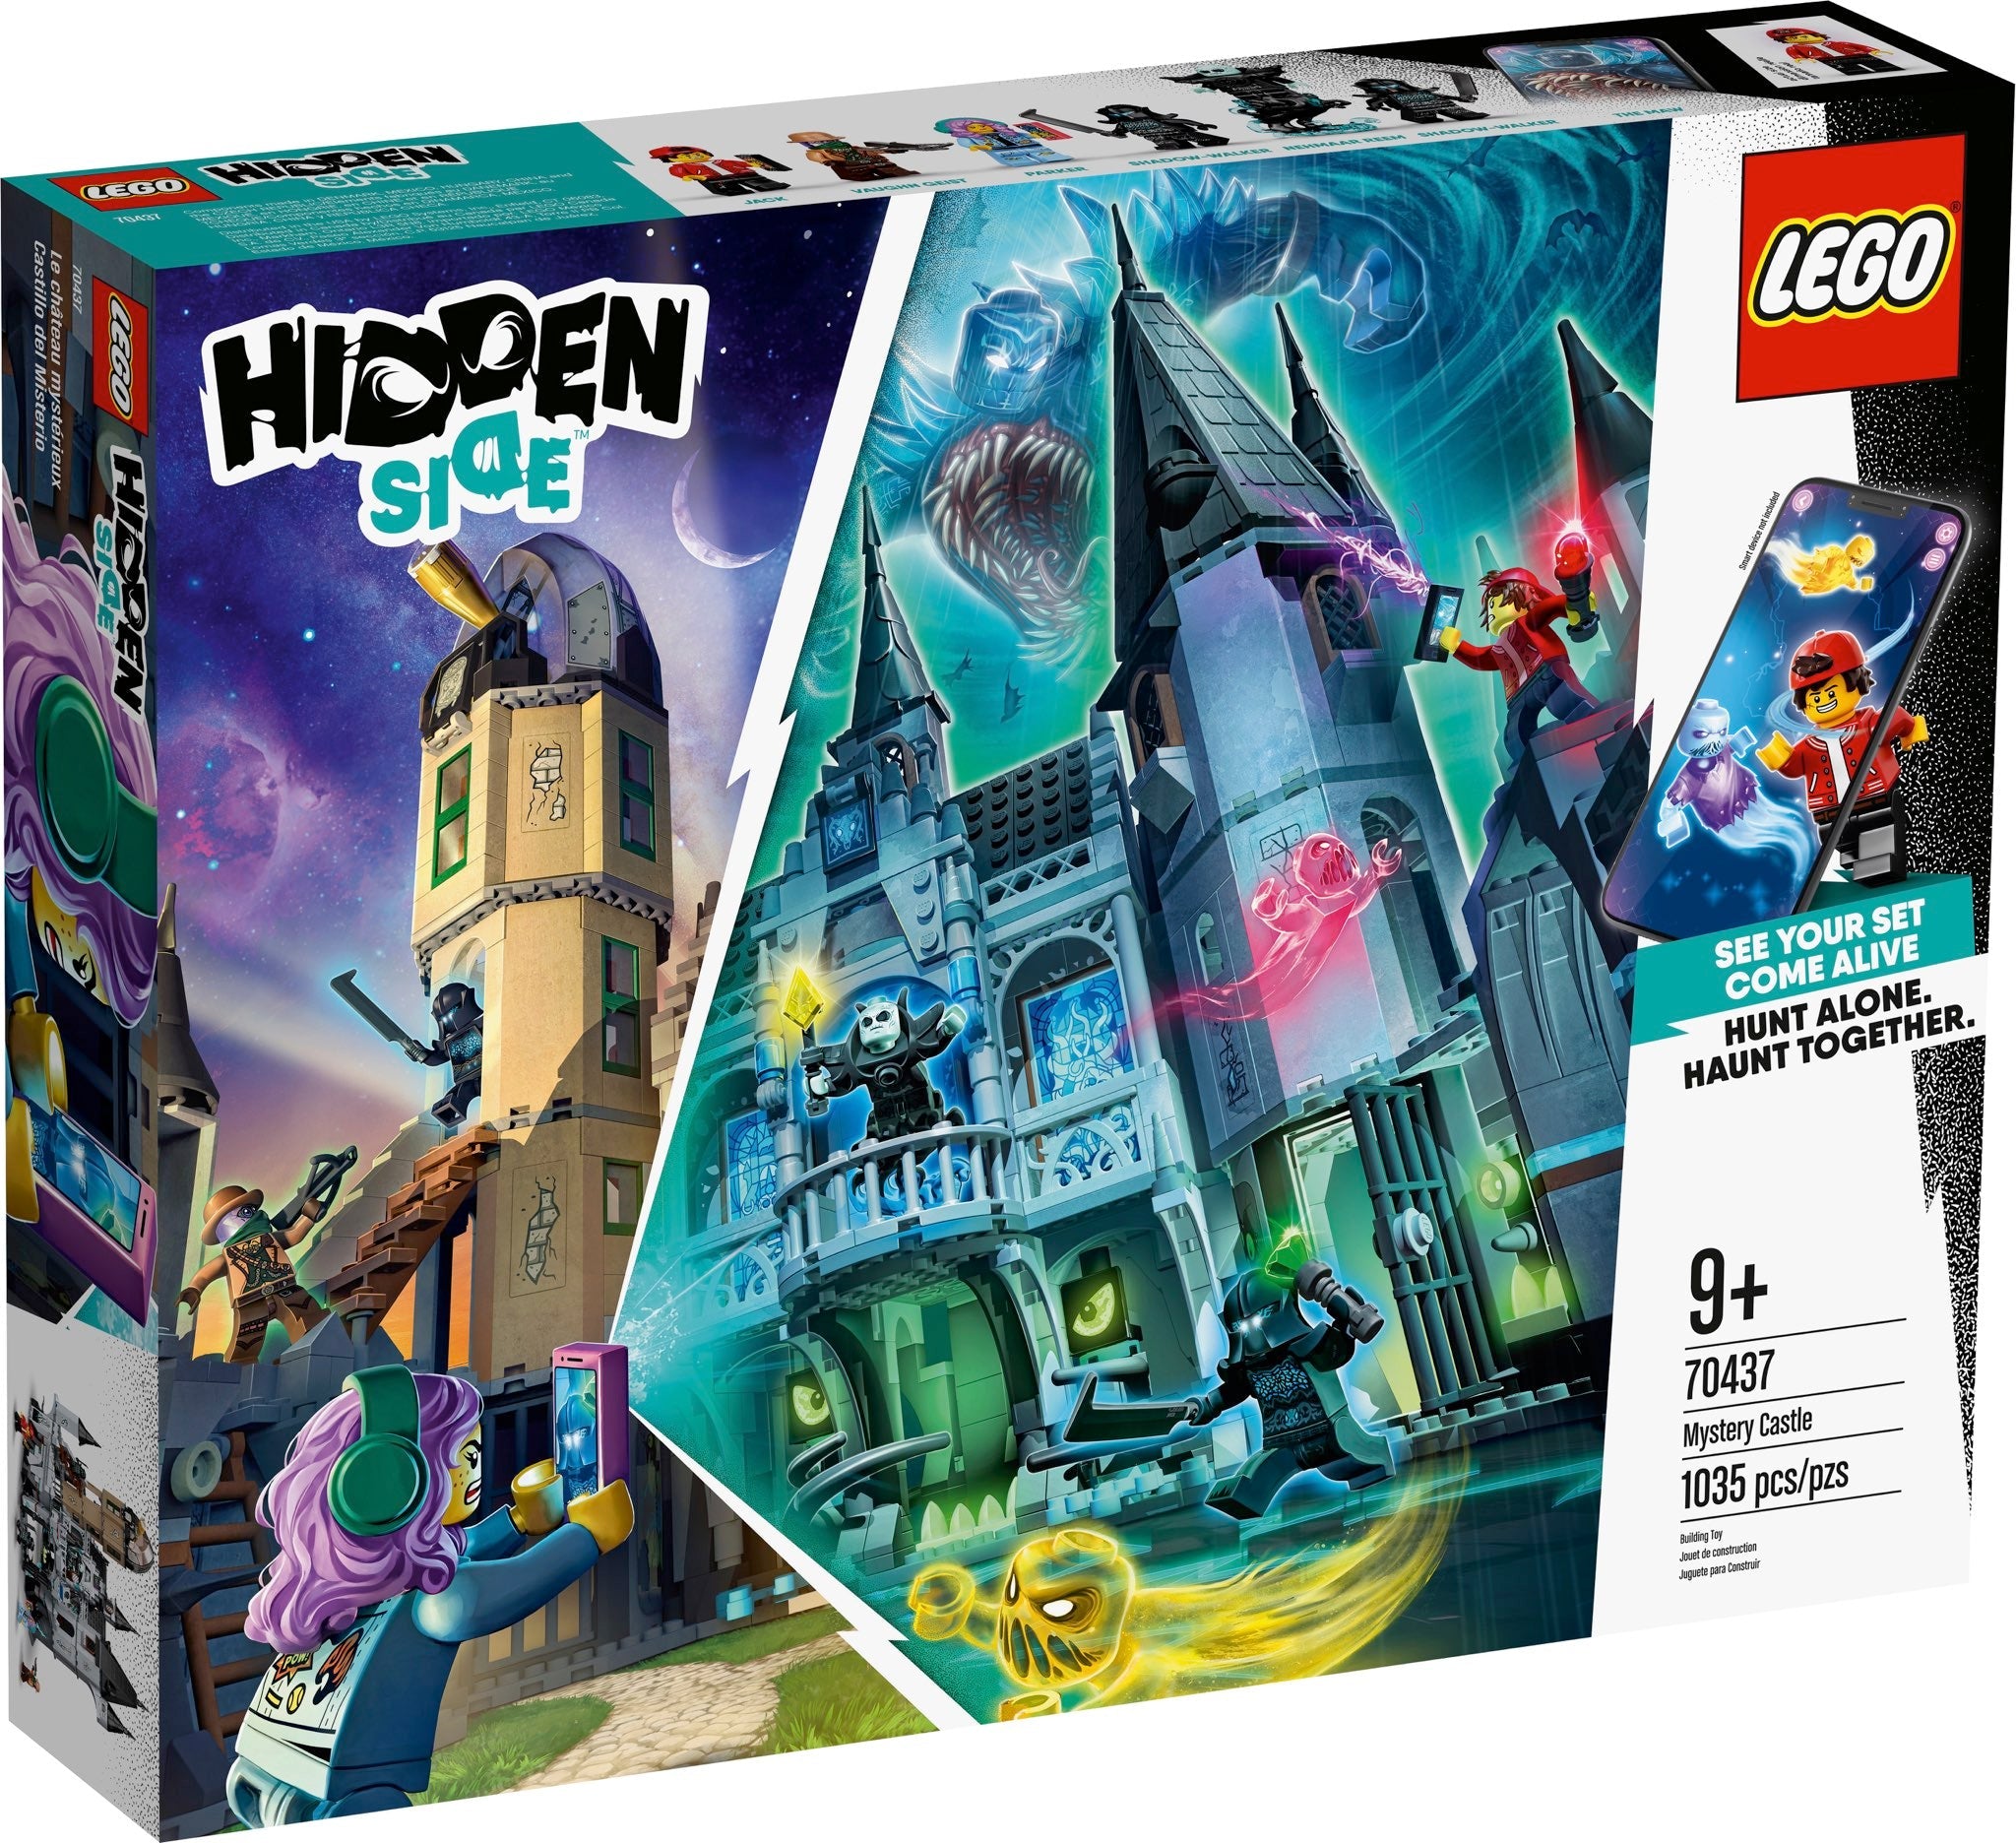 LEGO Hidden Side Geheimnisvolle Burg (70437) - im GOLDSTIEN.SHOP verfügbar mit Gratisversand ab Schweizer Lager! (5702016617580)